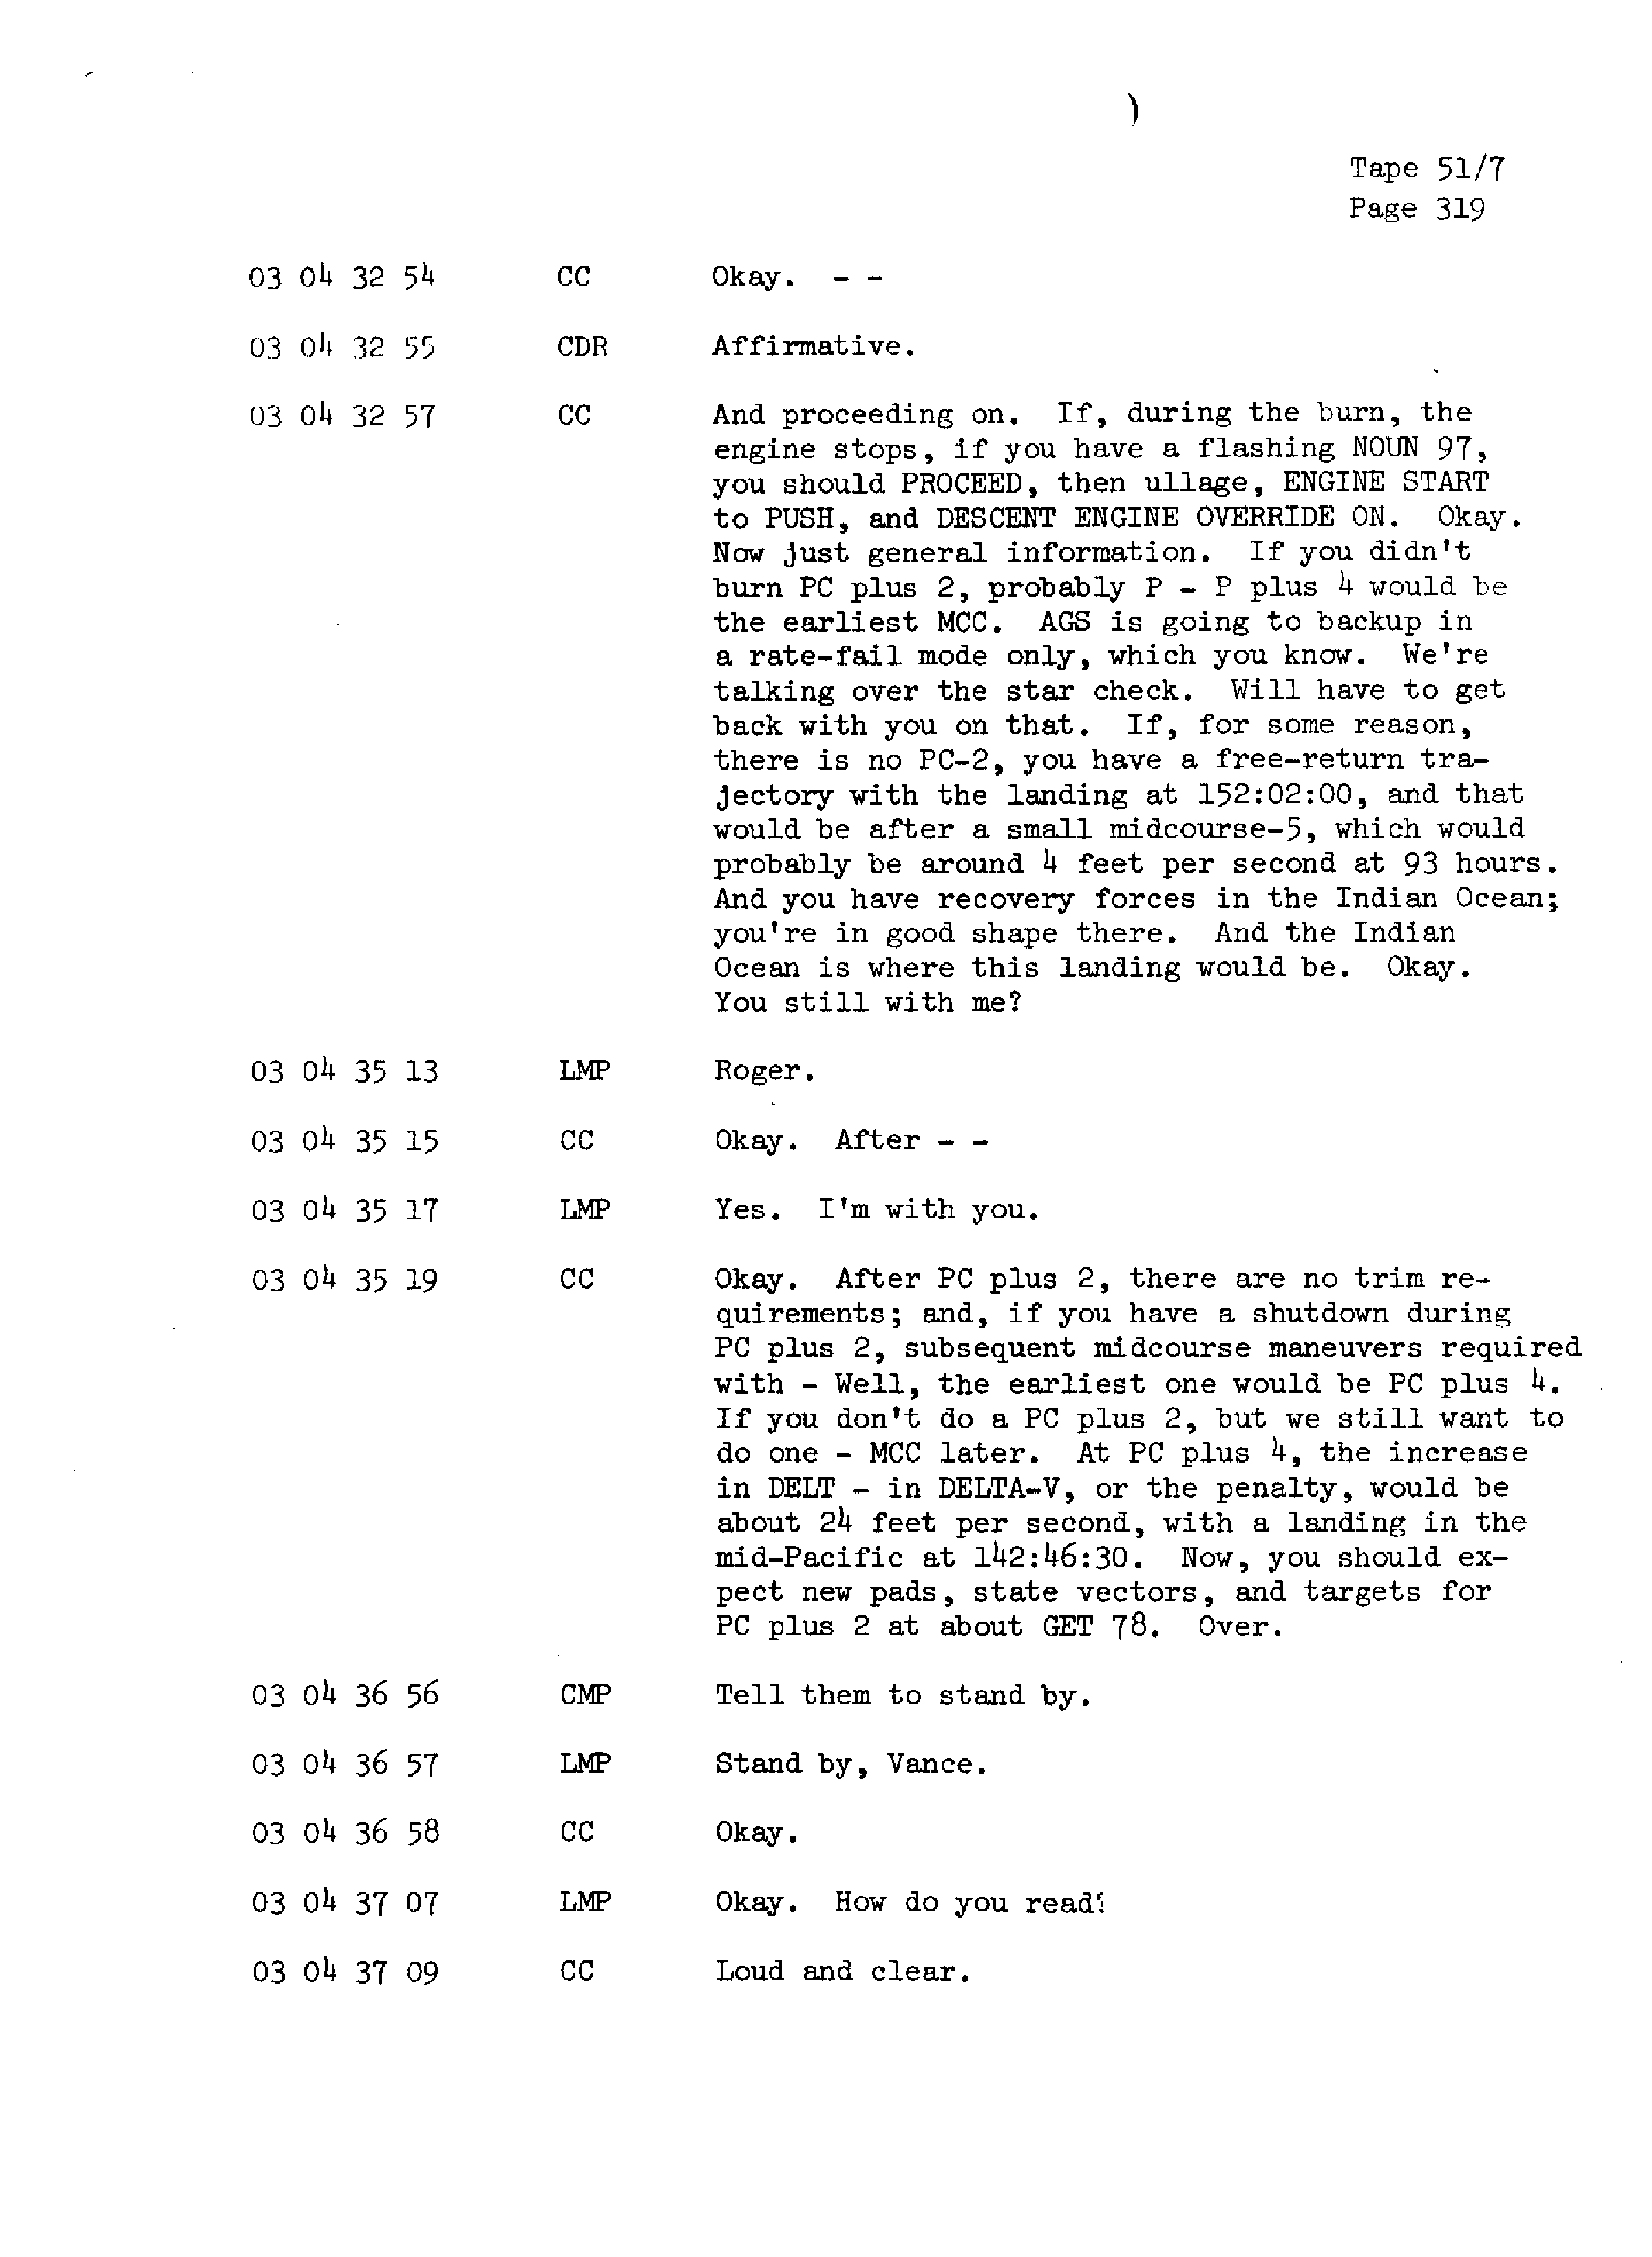 Page 326 of Apollo 13’s original transcript